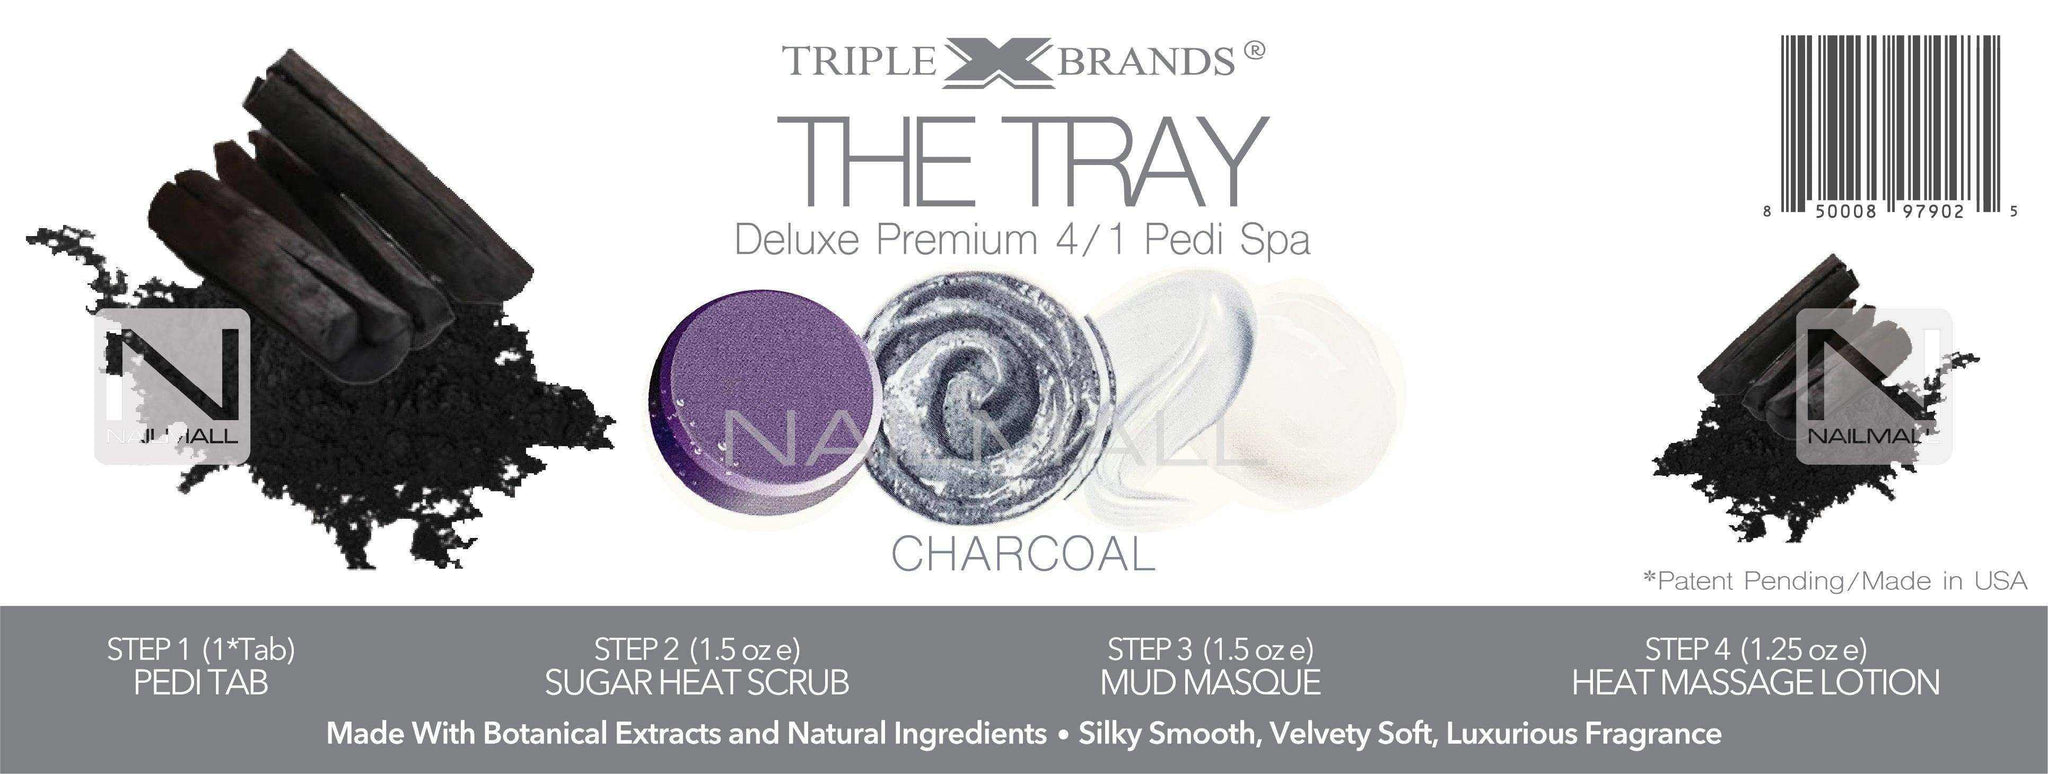 Triple X Brands 4/1 Pedi Spa Tray - Charcoal 1pc